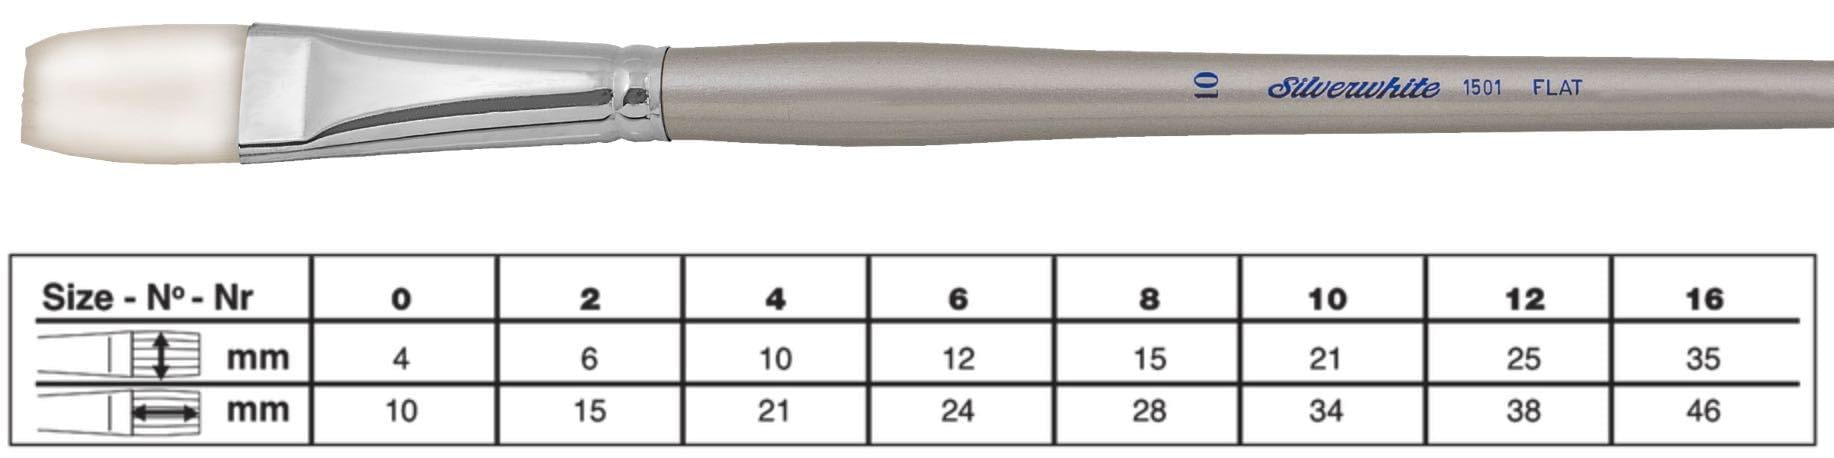 SILVER BRUSH SILVER BRUSH 16 (35mm x 46mm) Silver Brush 1501 Silverwhite Long Handle